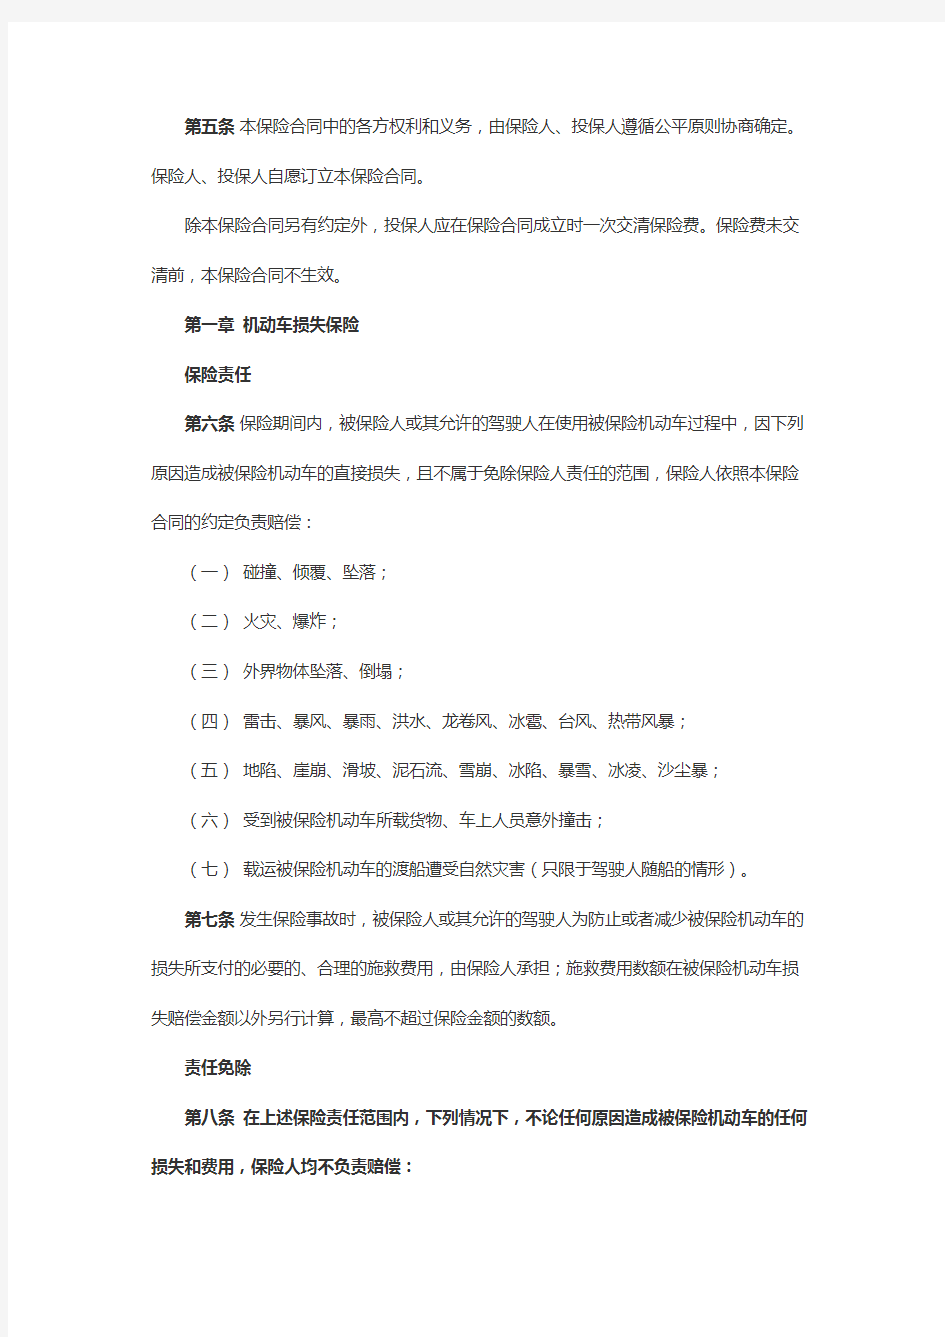 中国人民财产保险股份公司机动车综合商业保险条款